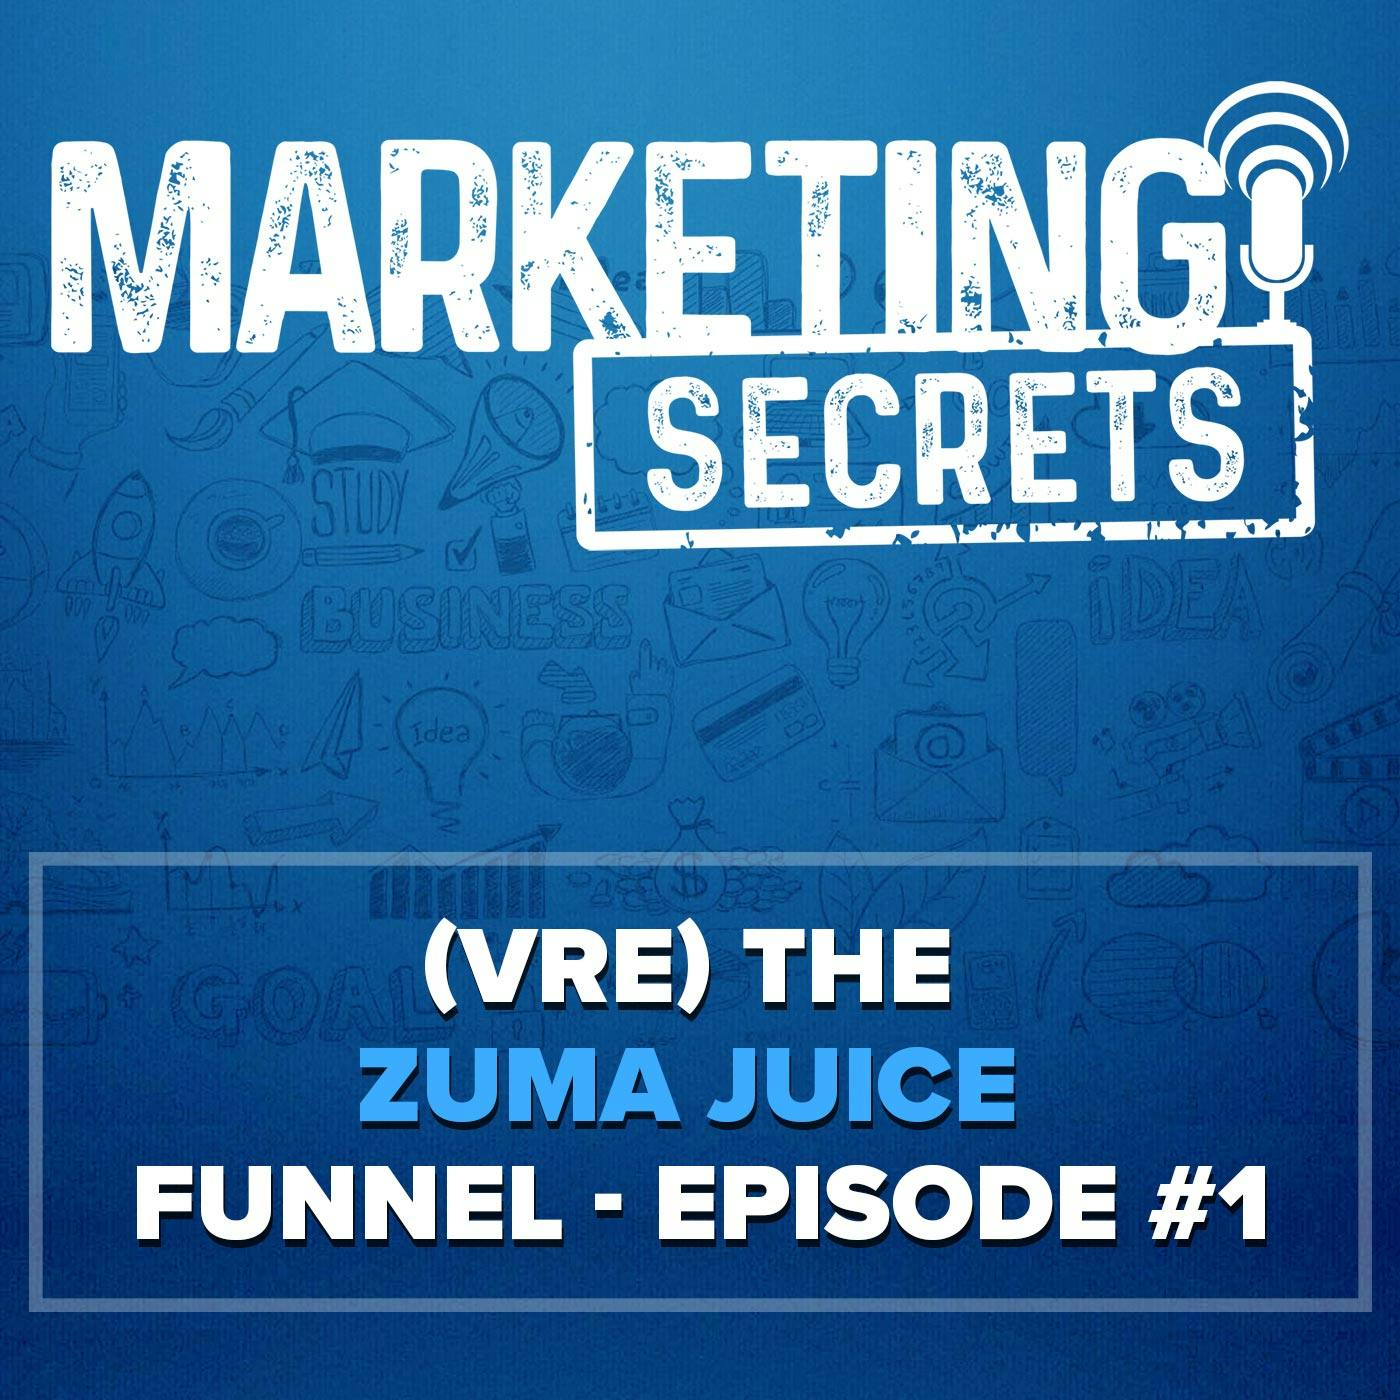 S2E3 - (VRE) The Zuma Juice Funnel - Episode #1